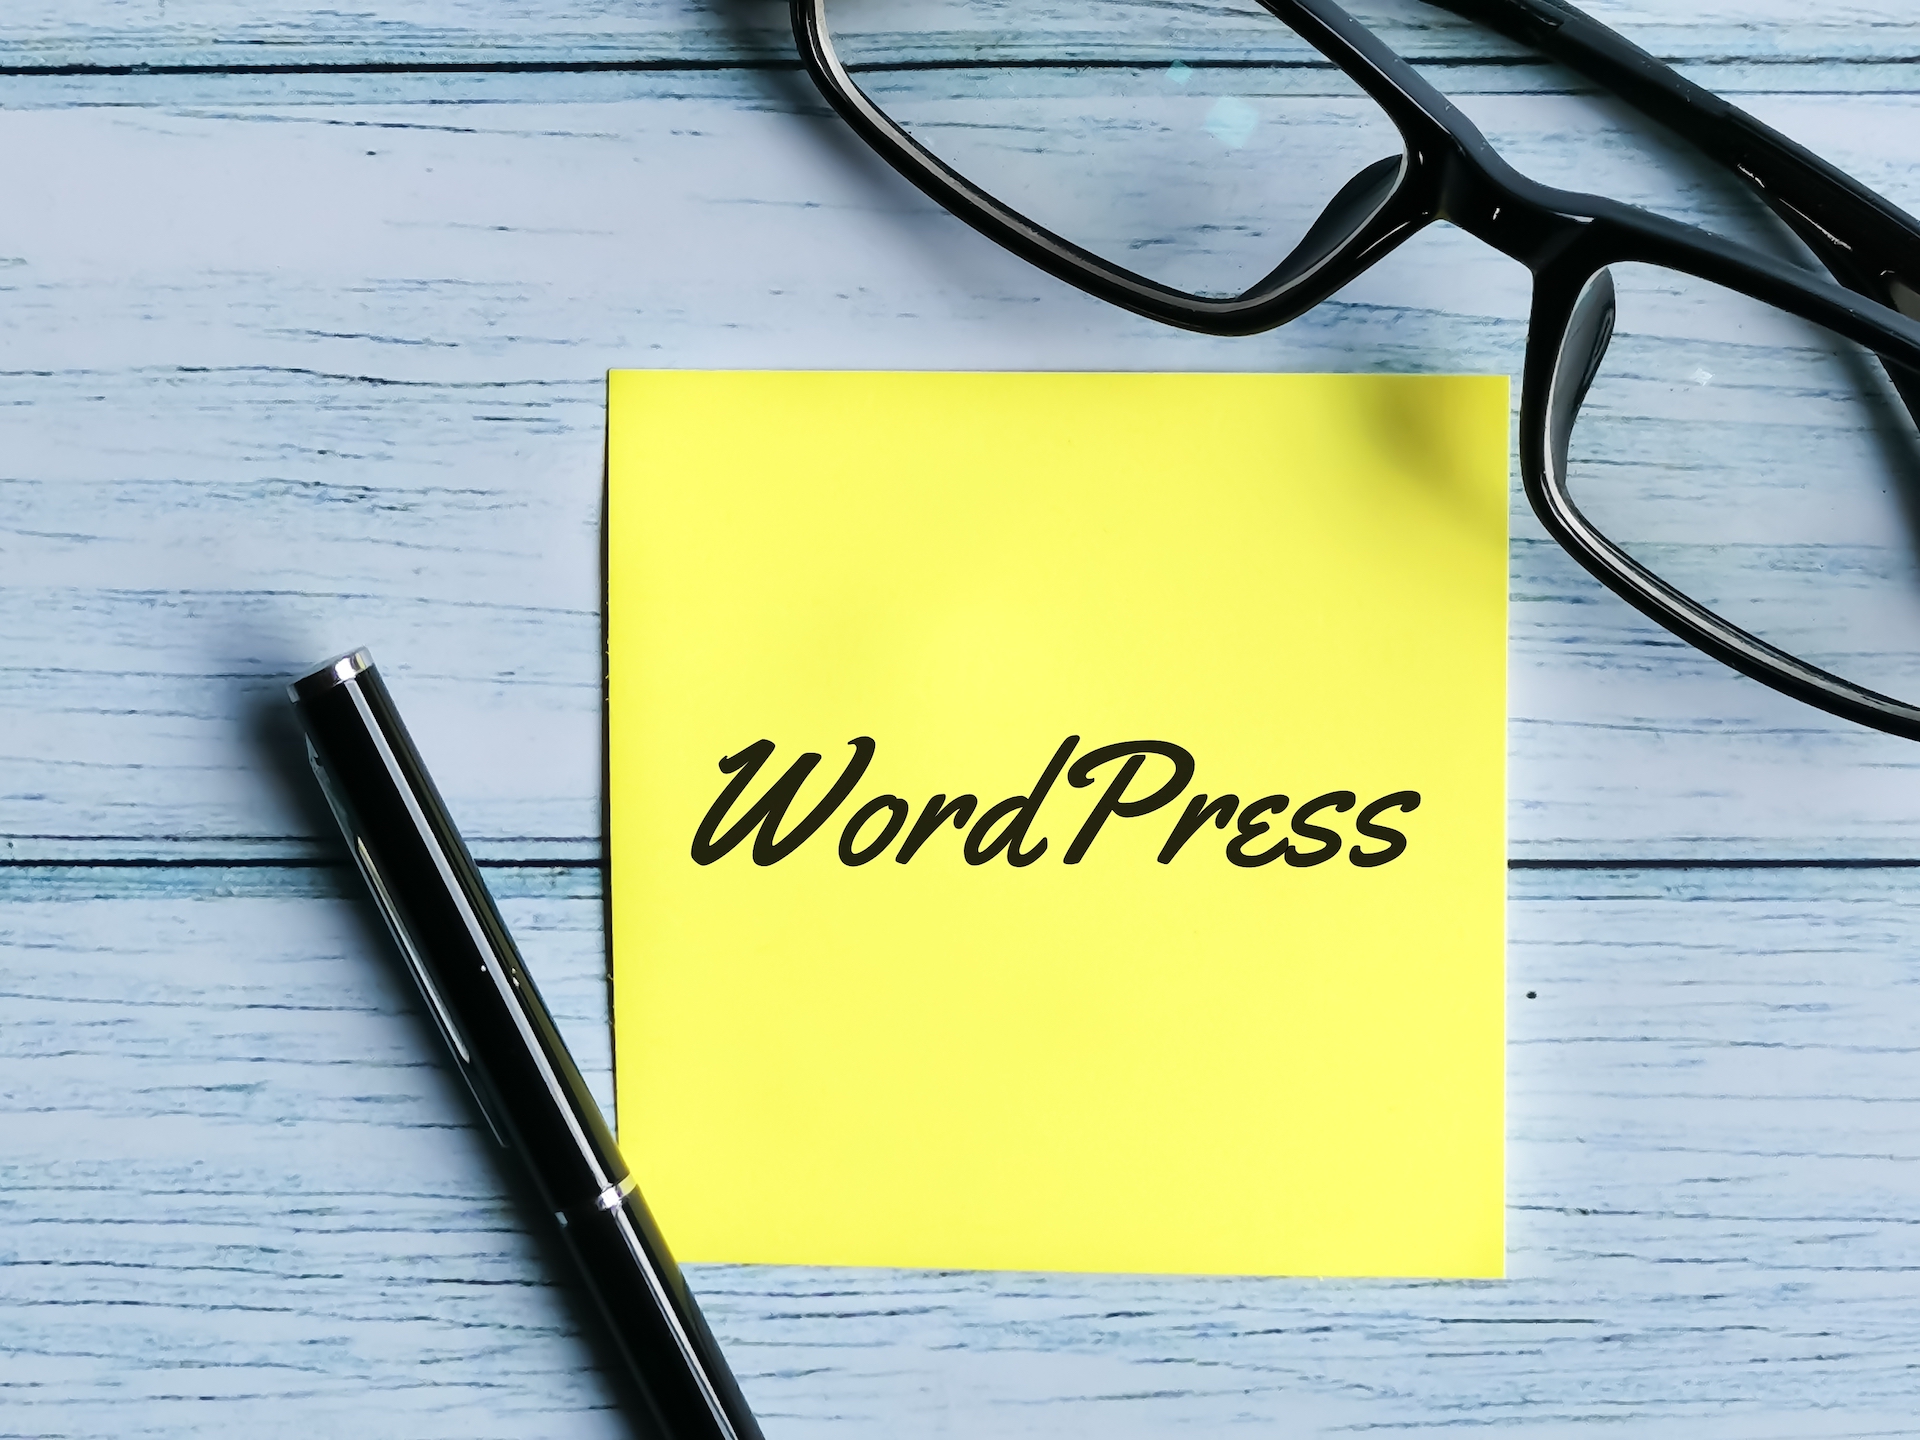 wordpress ücretsiz mi? Wordpress ücreti ne kadar?